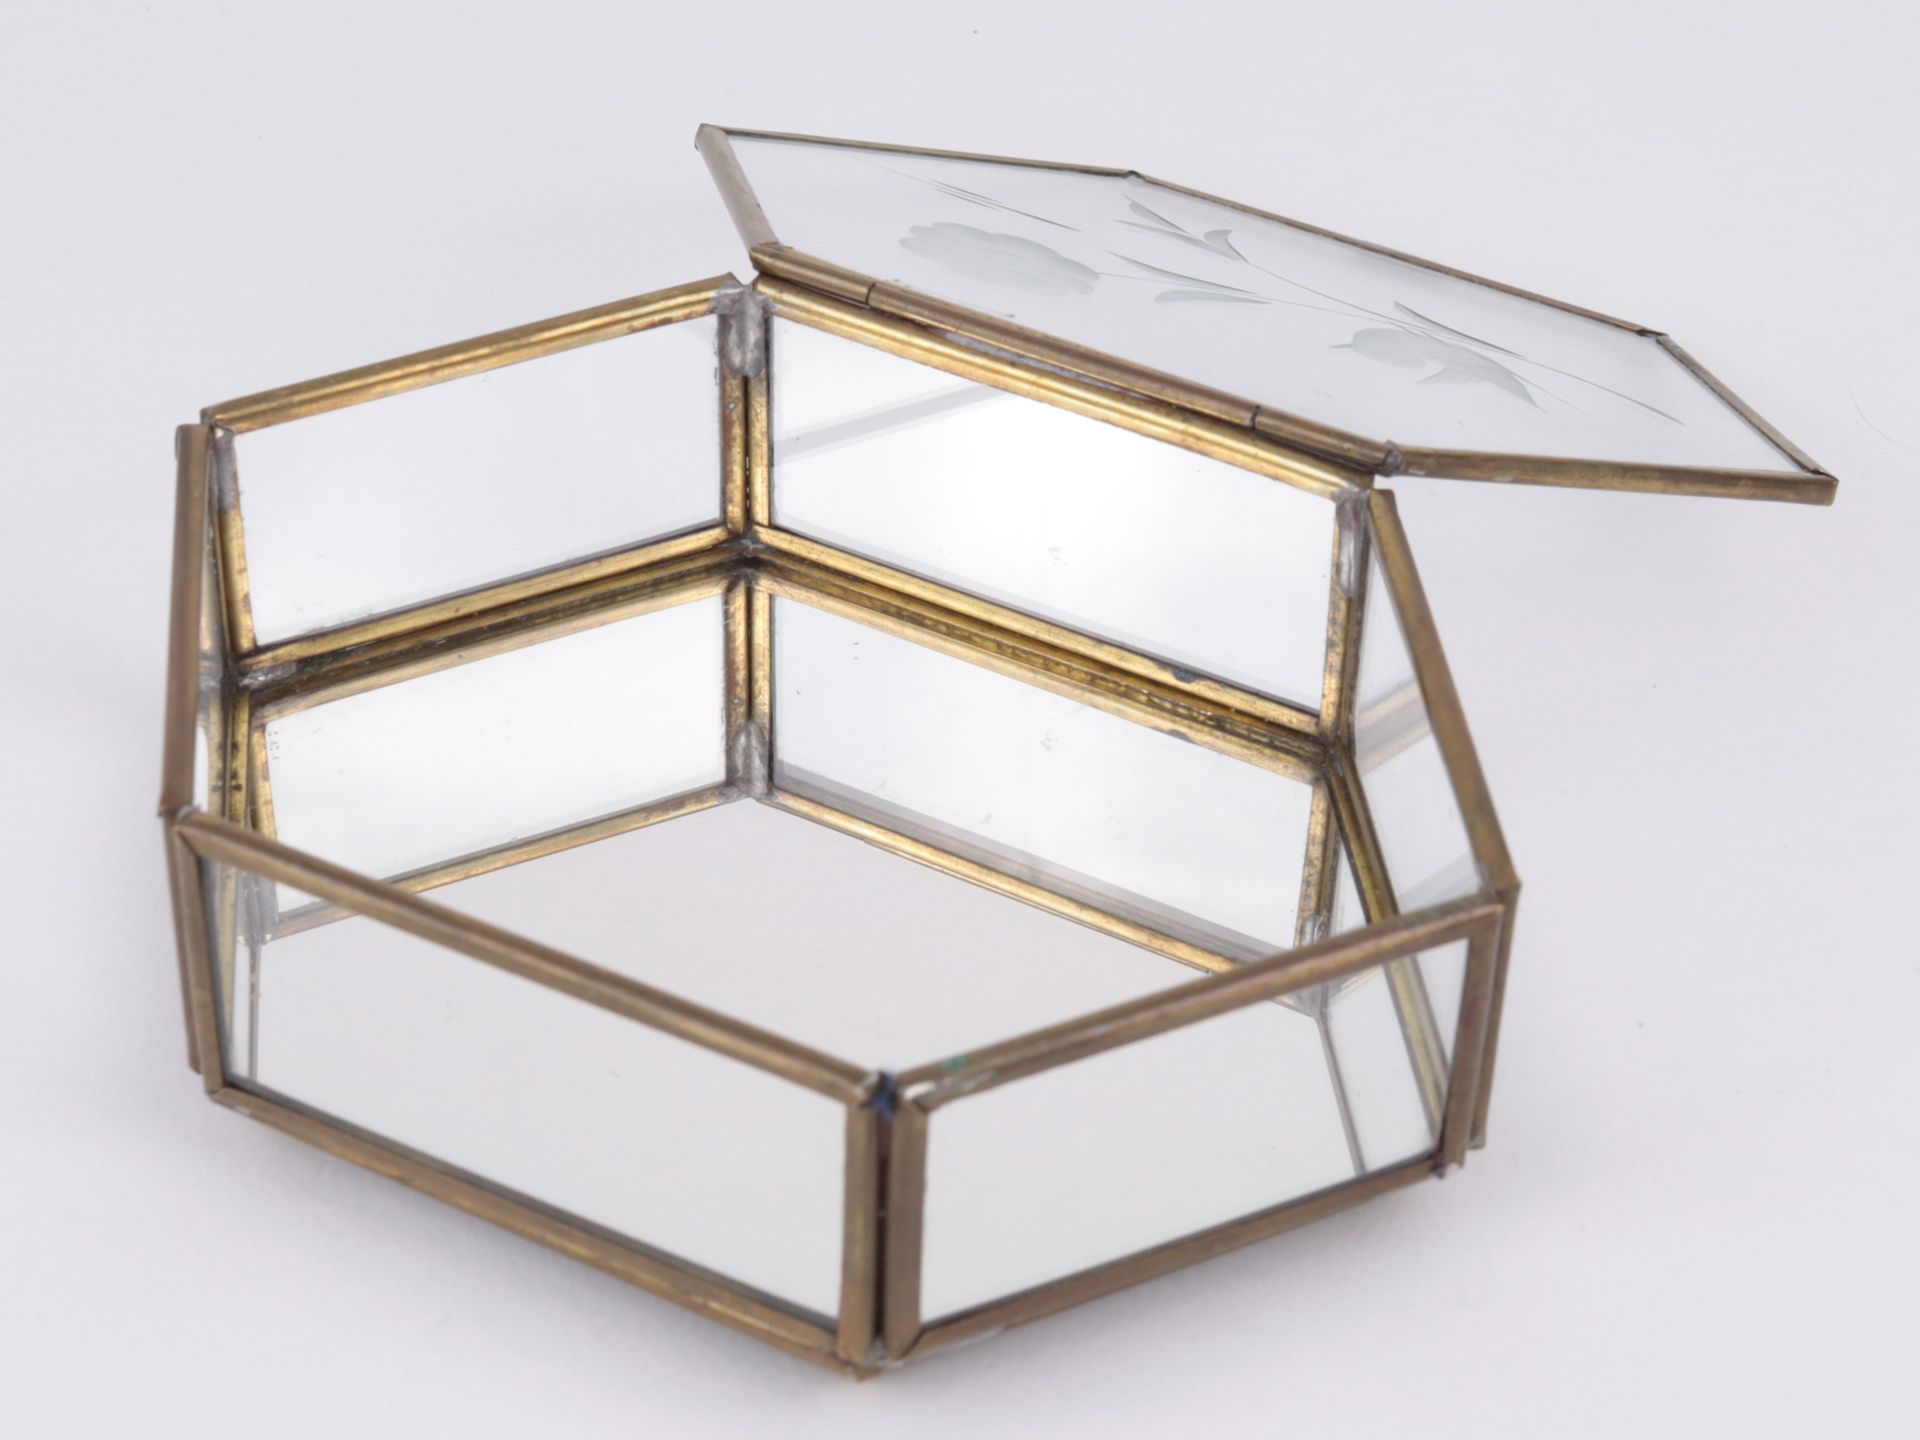 Jugendstil - Deckeldose Glas/Messing, geschliffen/geätzt, hexagonaler Korpus, Innenbo - Bild 2 aus 3